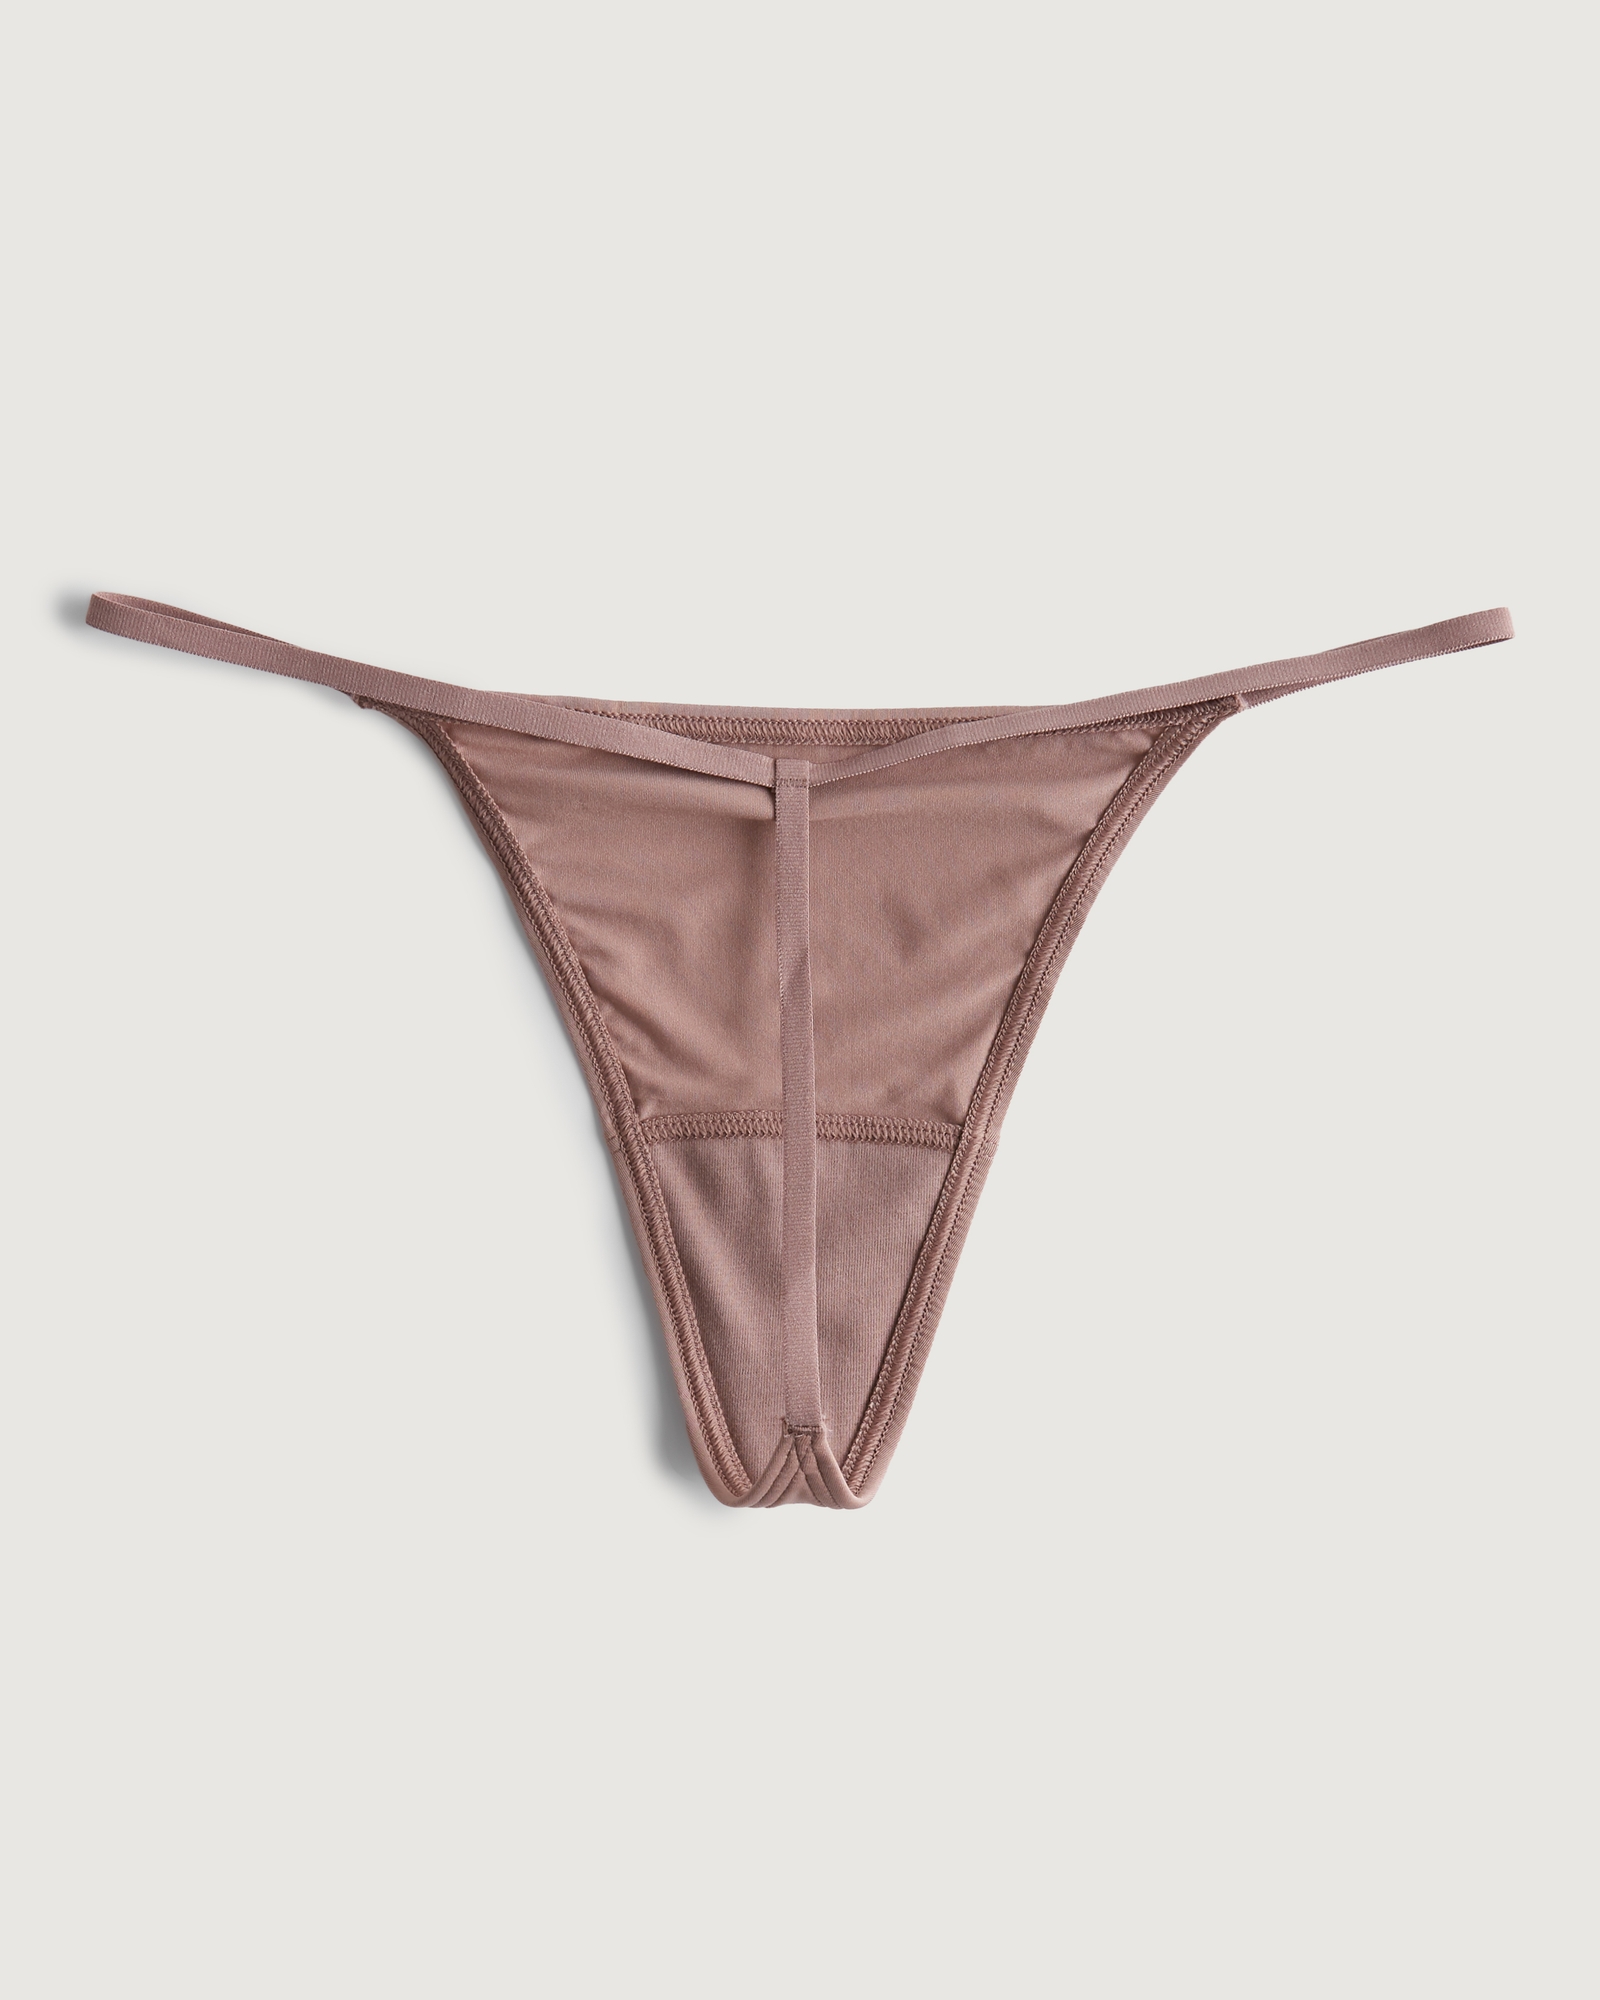 Women's Gilly Hicks Lace Strappy Thong Underwear, Women's Bras & Underwear